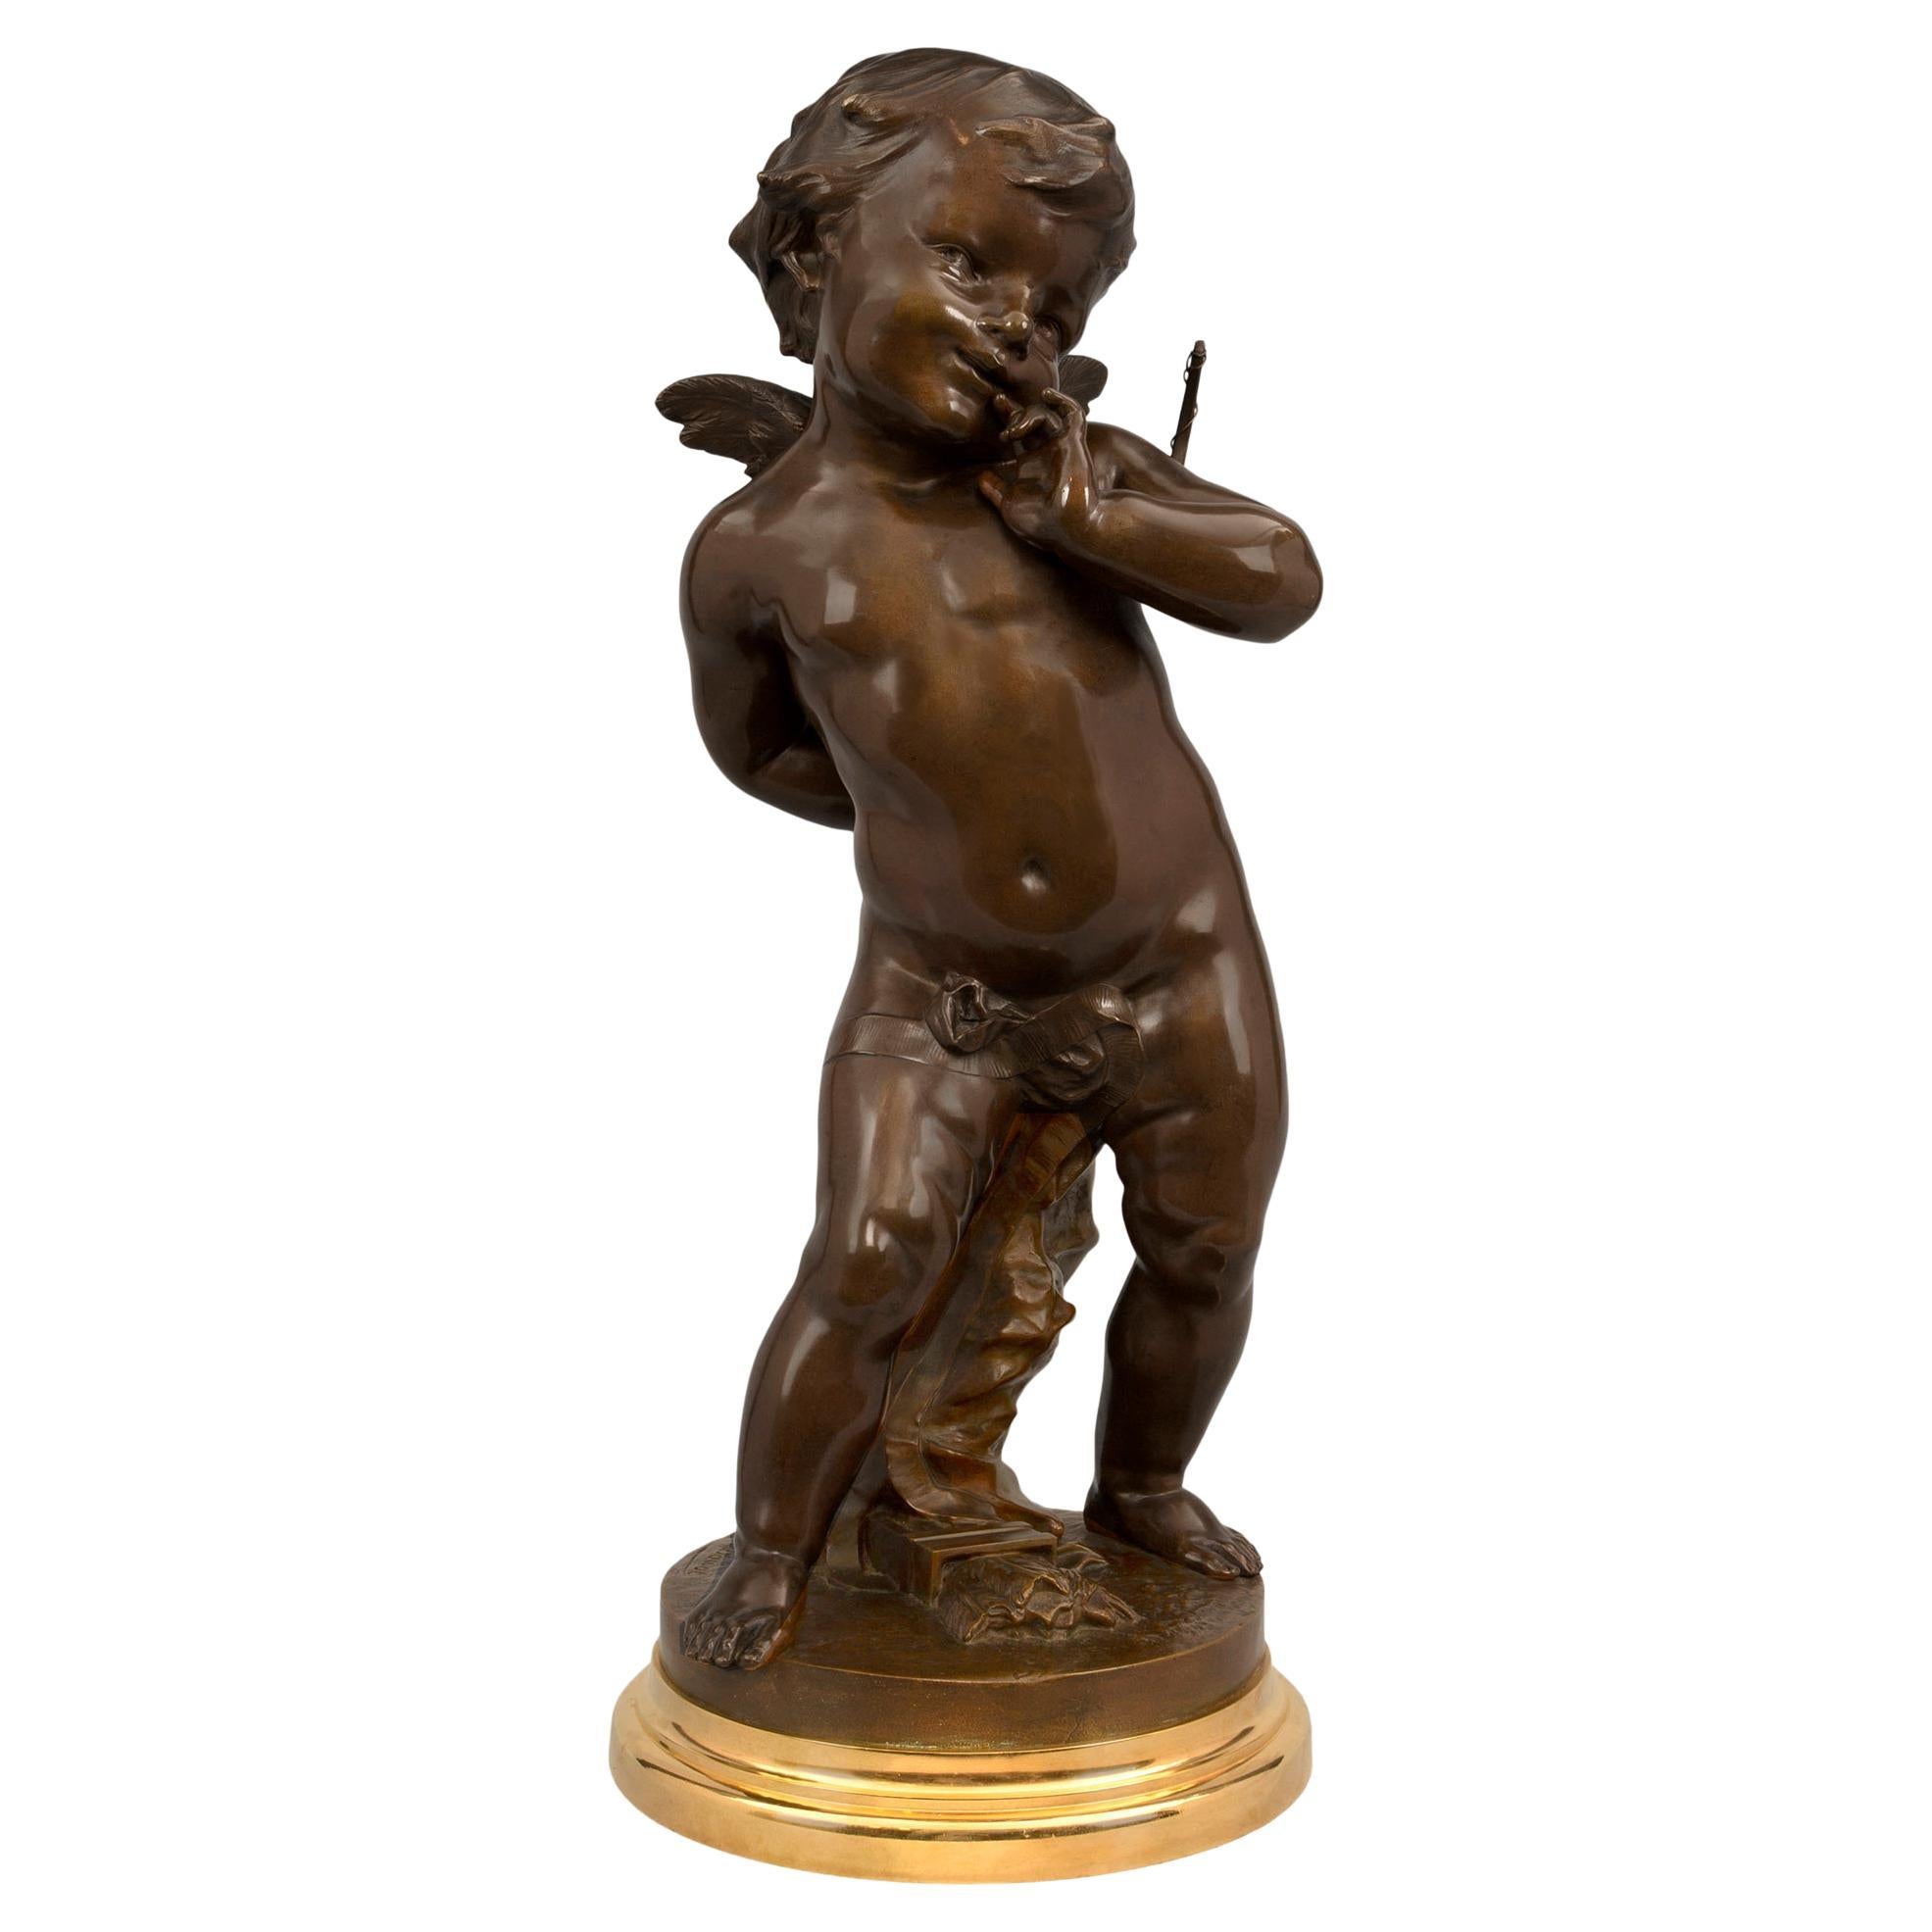 Patinierte Bronze- und Goldbronze-Statue, Louis-XVI.-Stil, 19. Jahrhundert